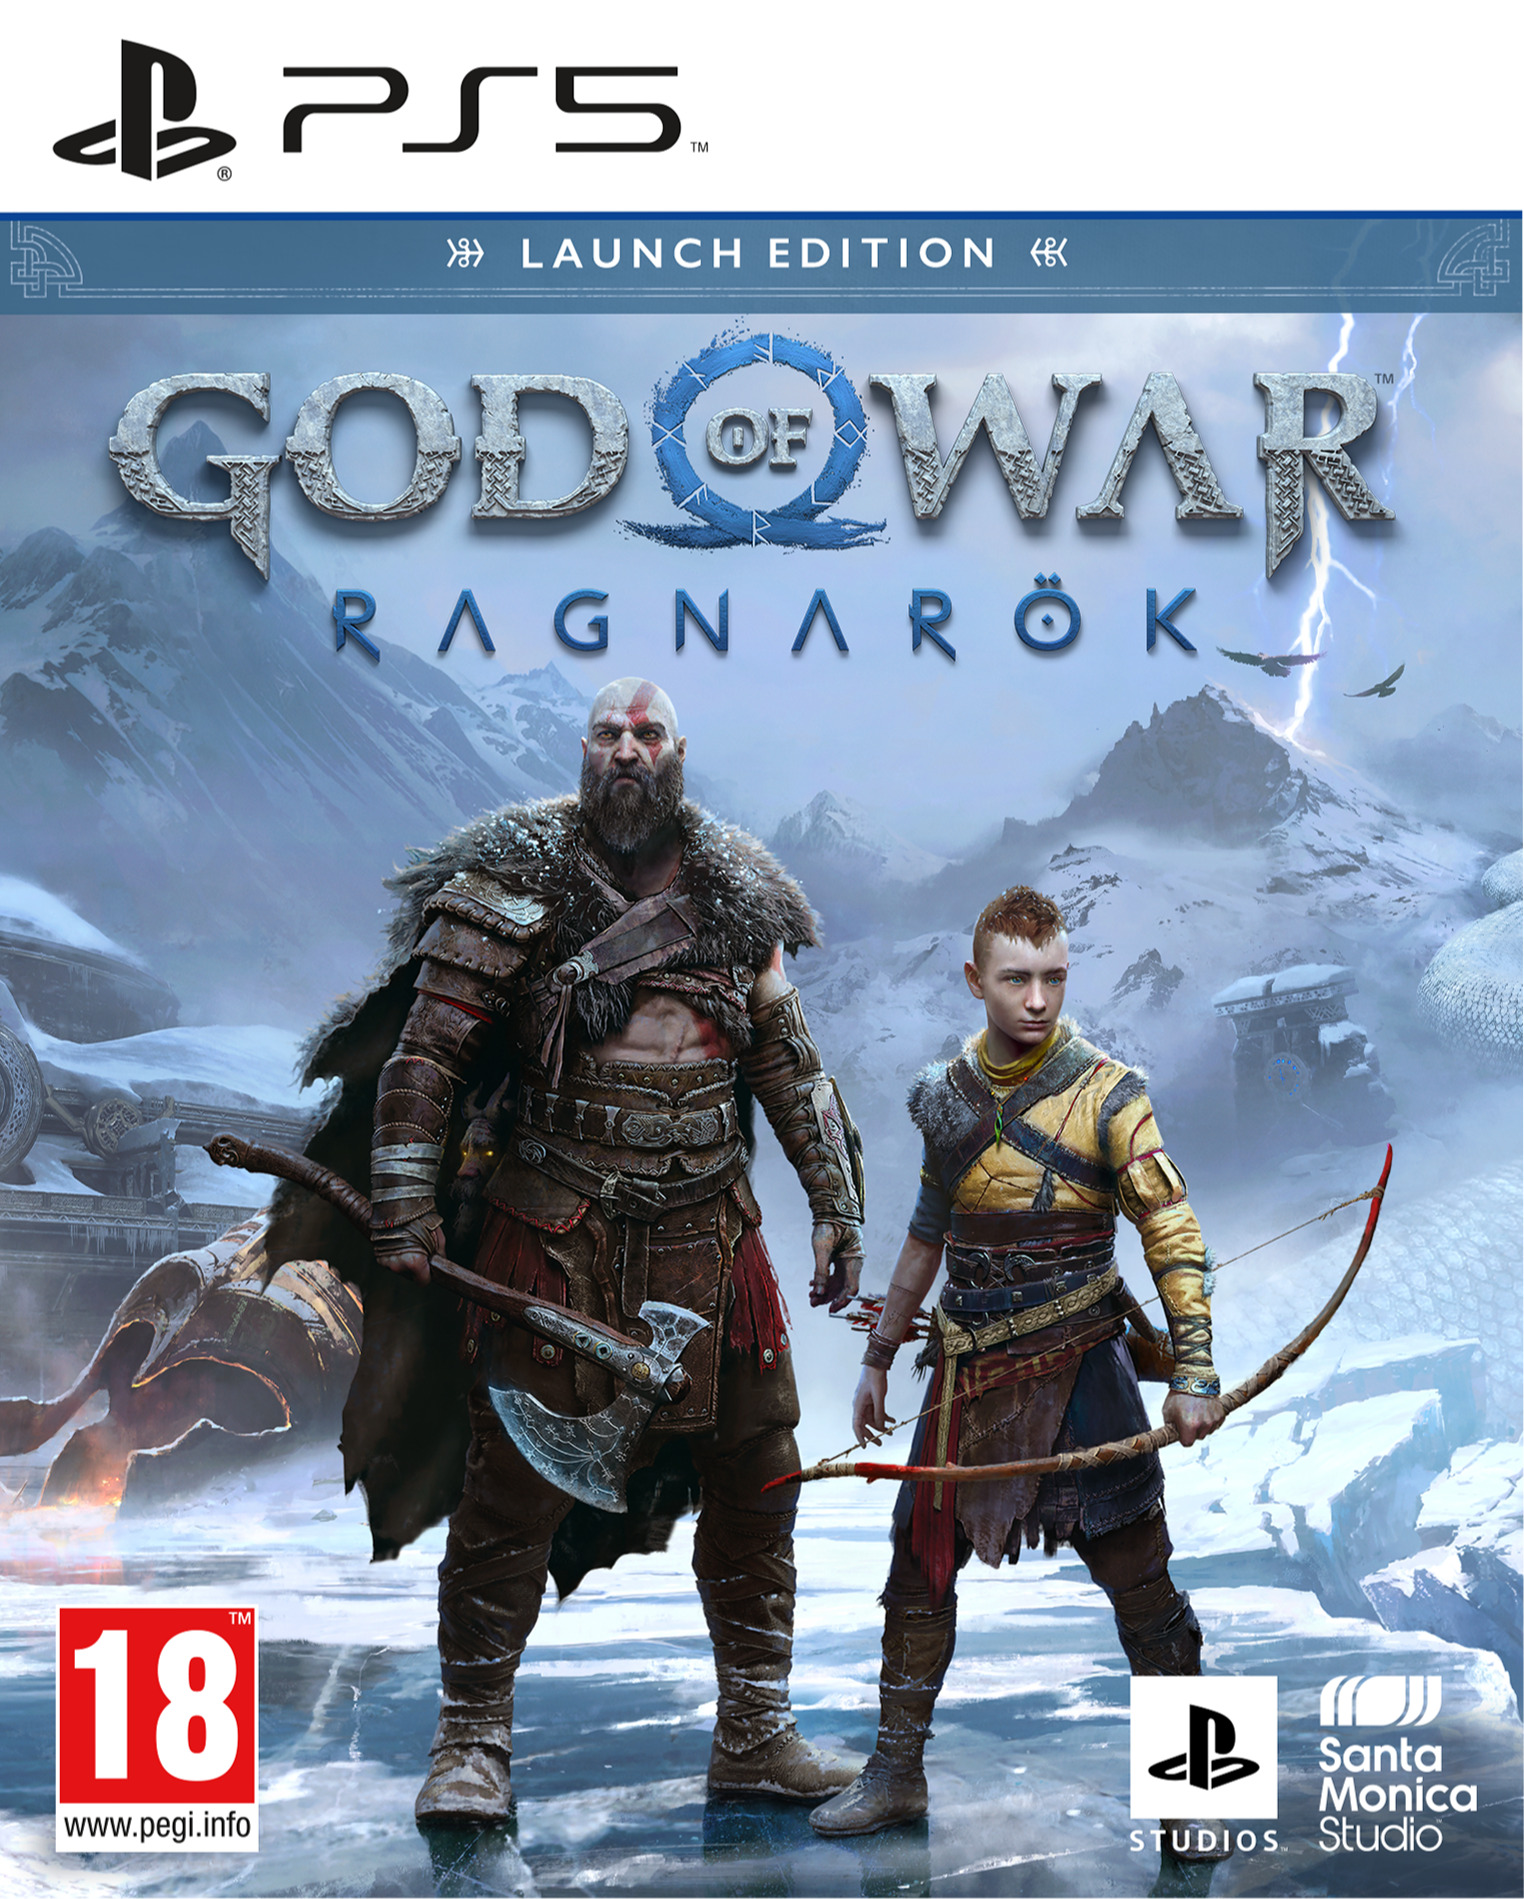 God of War: Ragnarok (PS5)